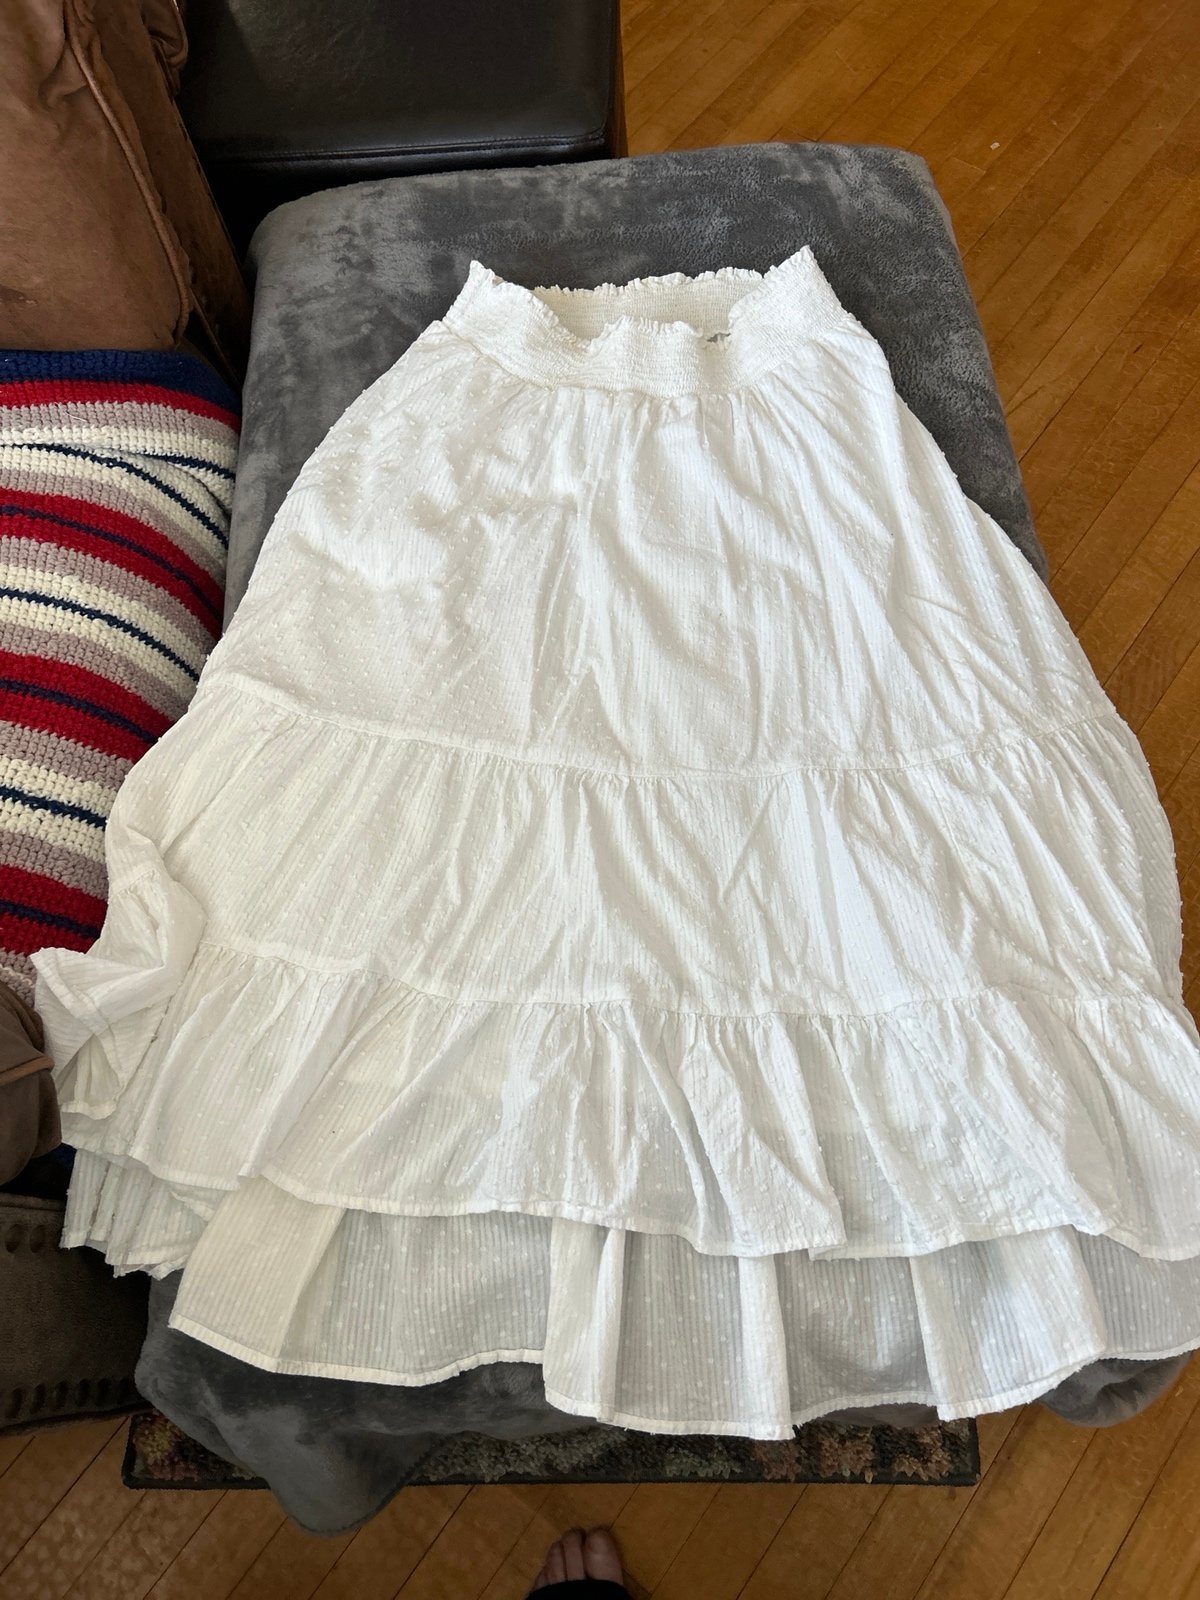 Buy lauren conrad skirt size large never worn gr0D9E2fa